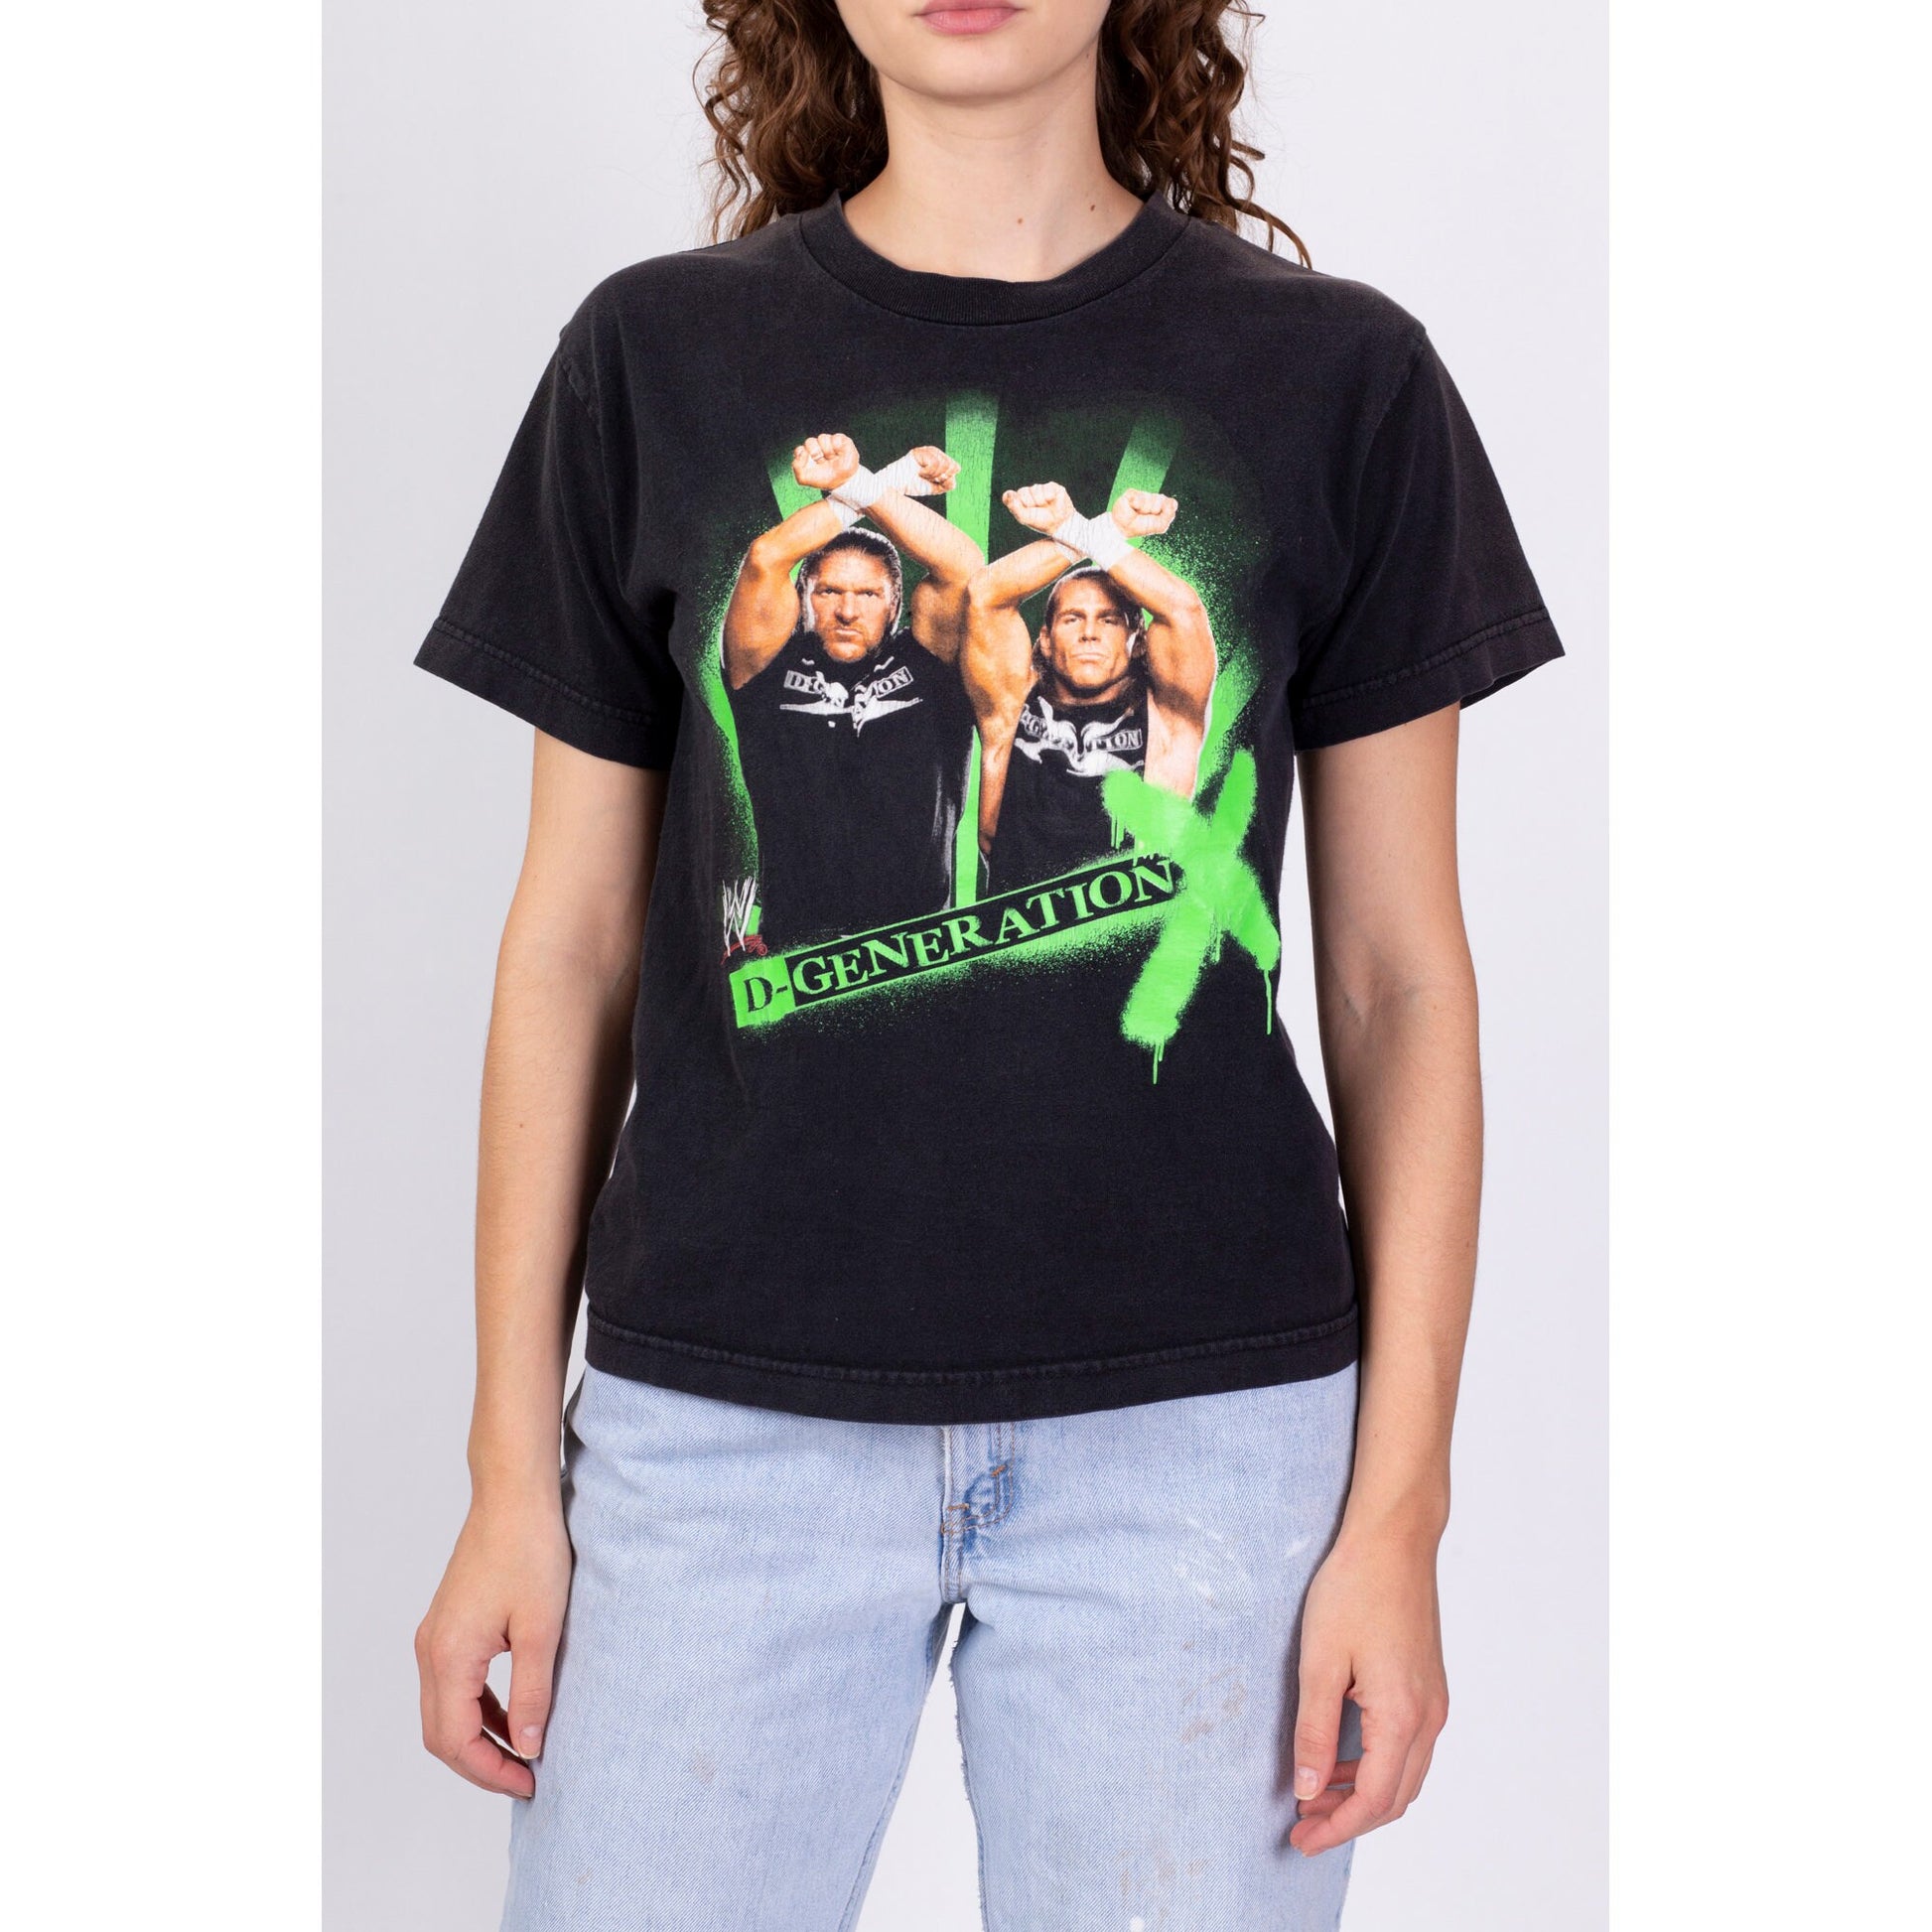 WWE, Shirts